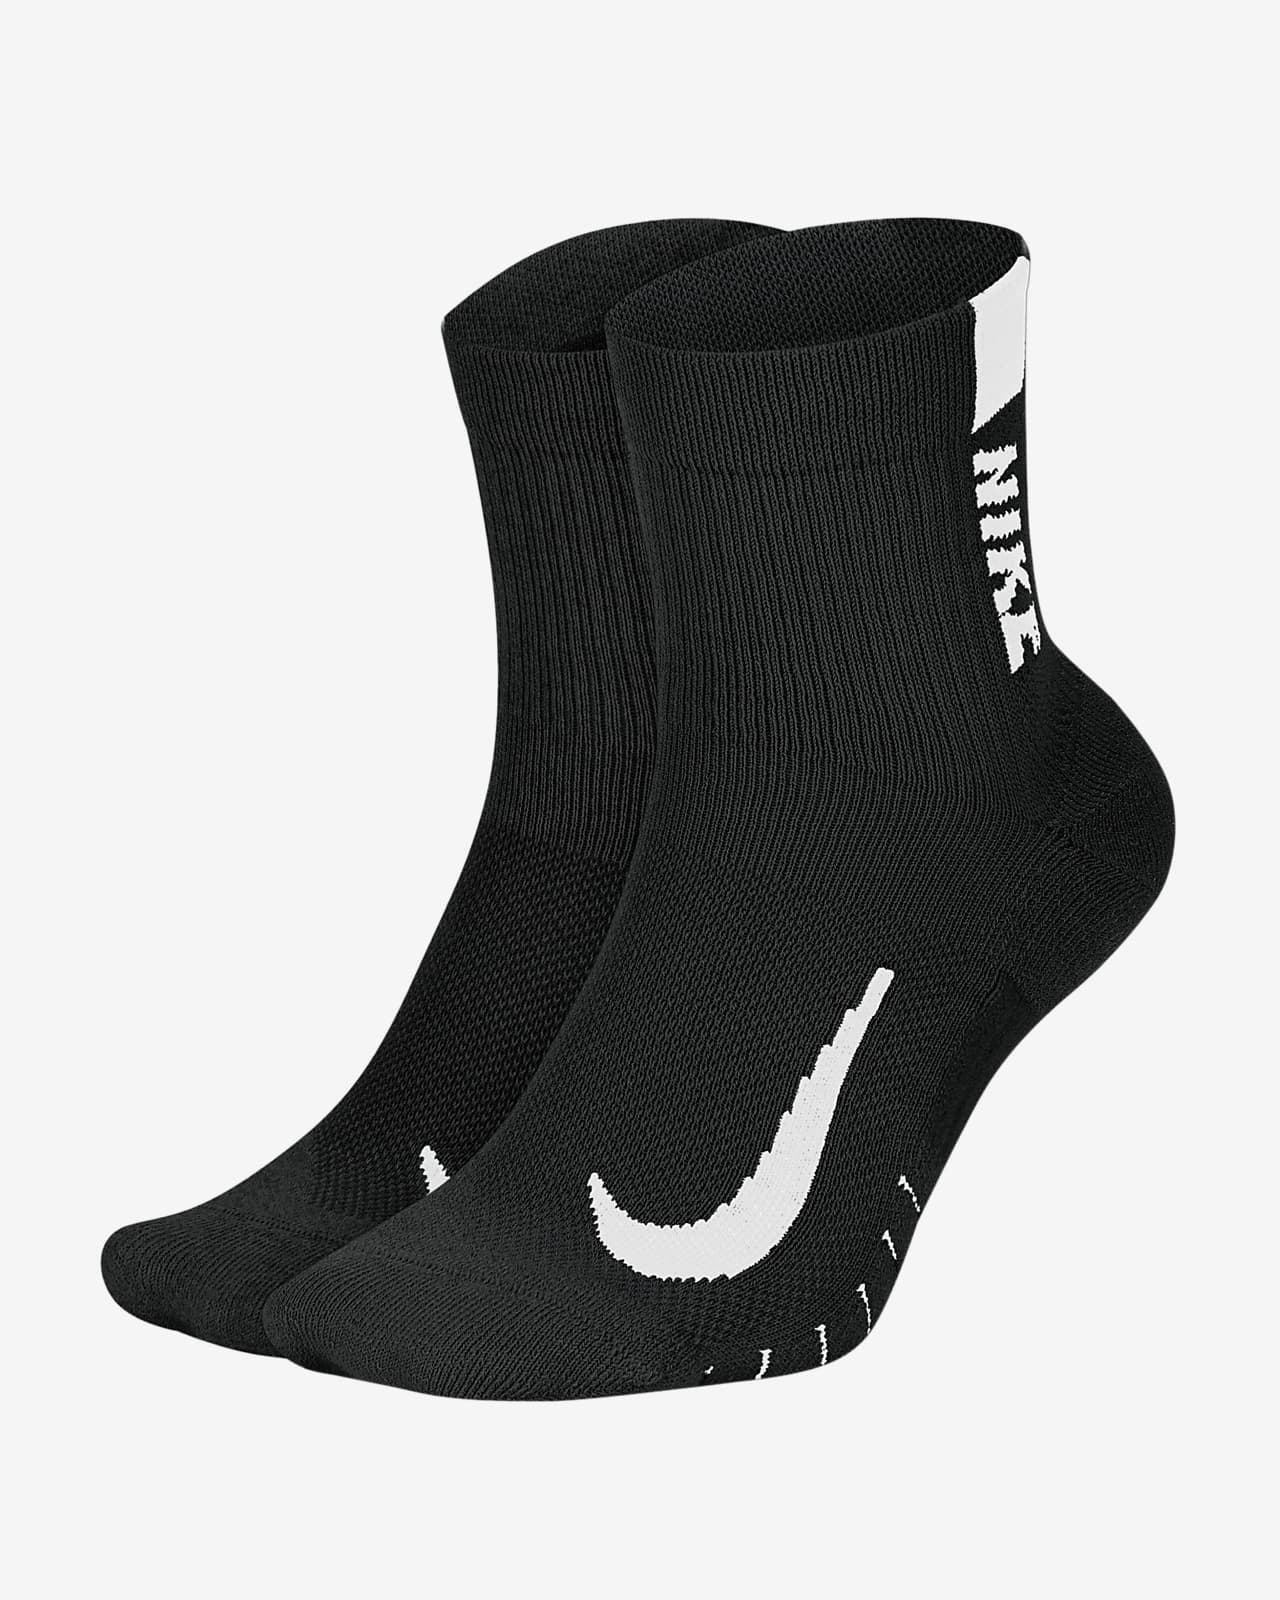 Krótkie skarpety do biegania Nike Multiplier (2 pary)